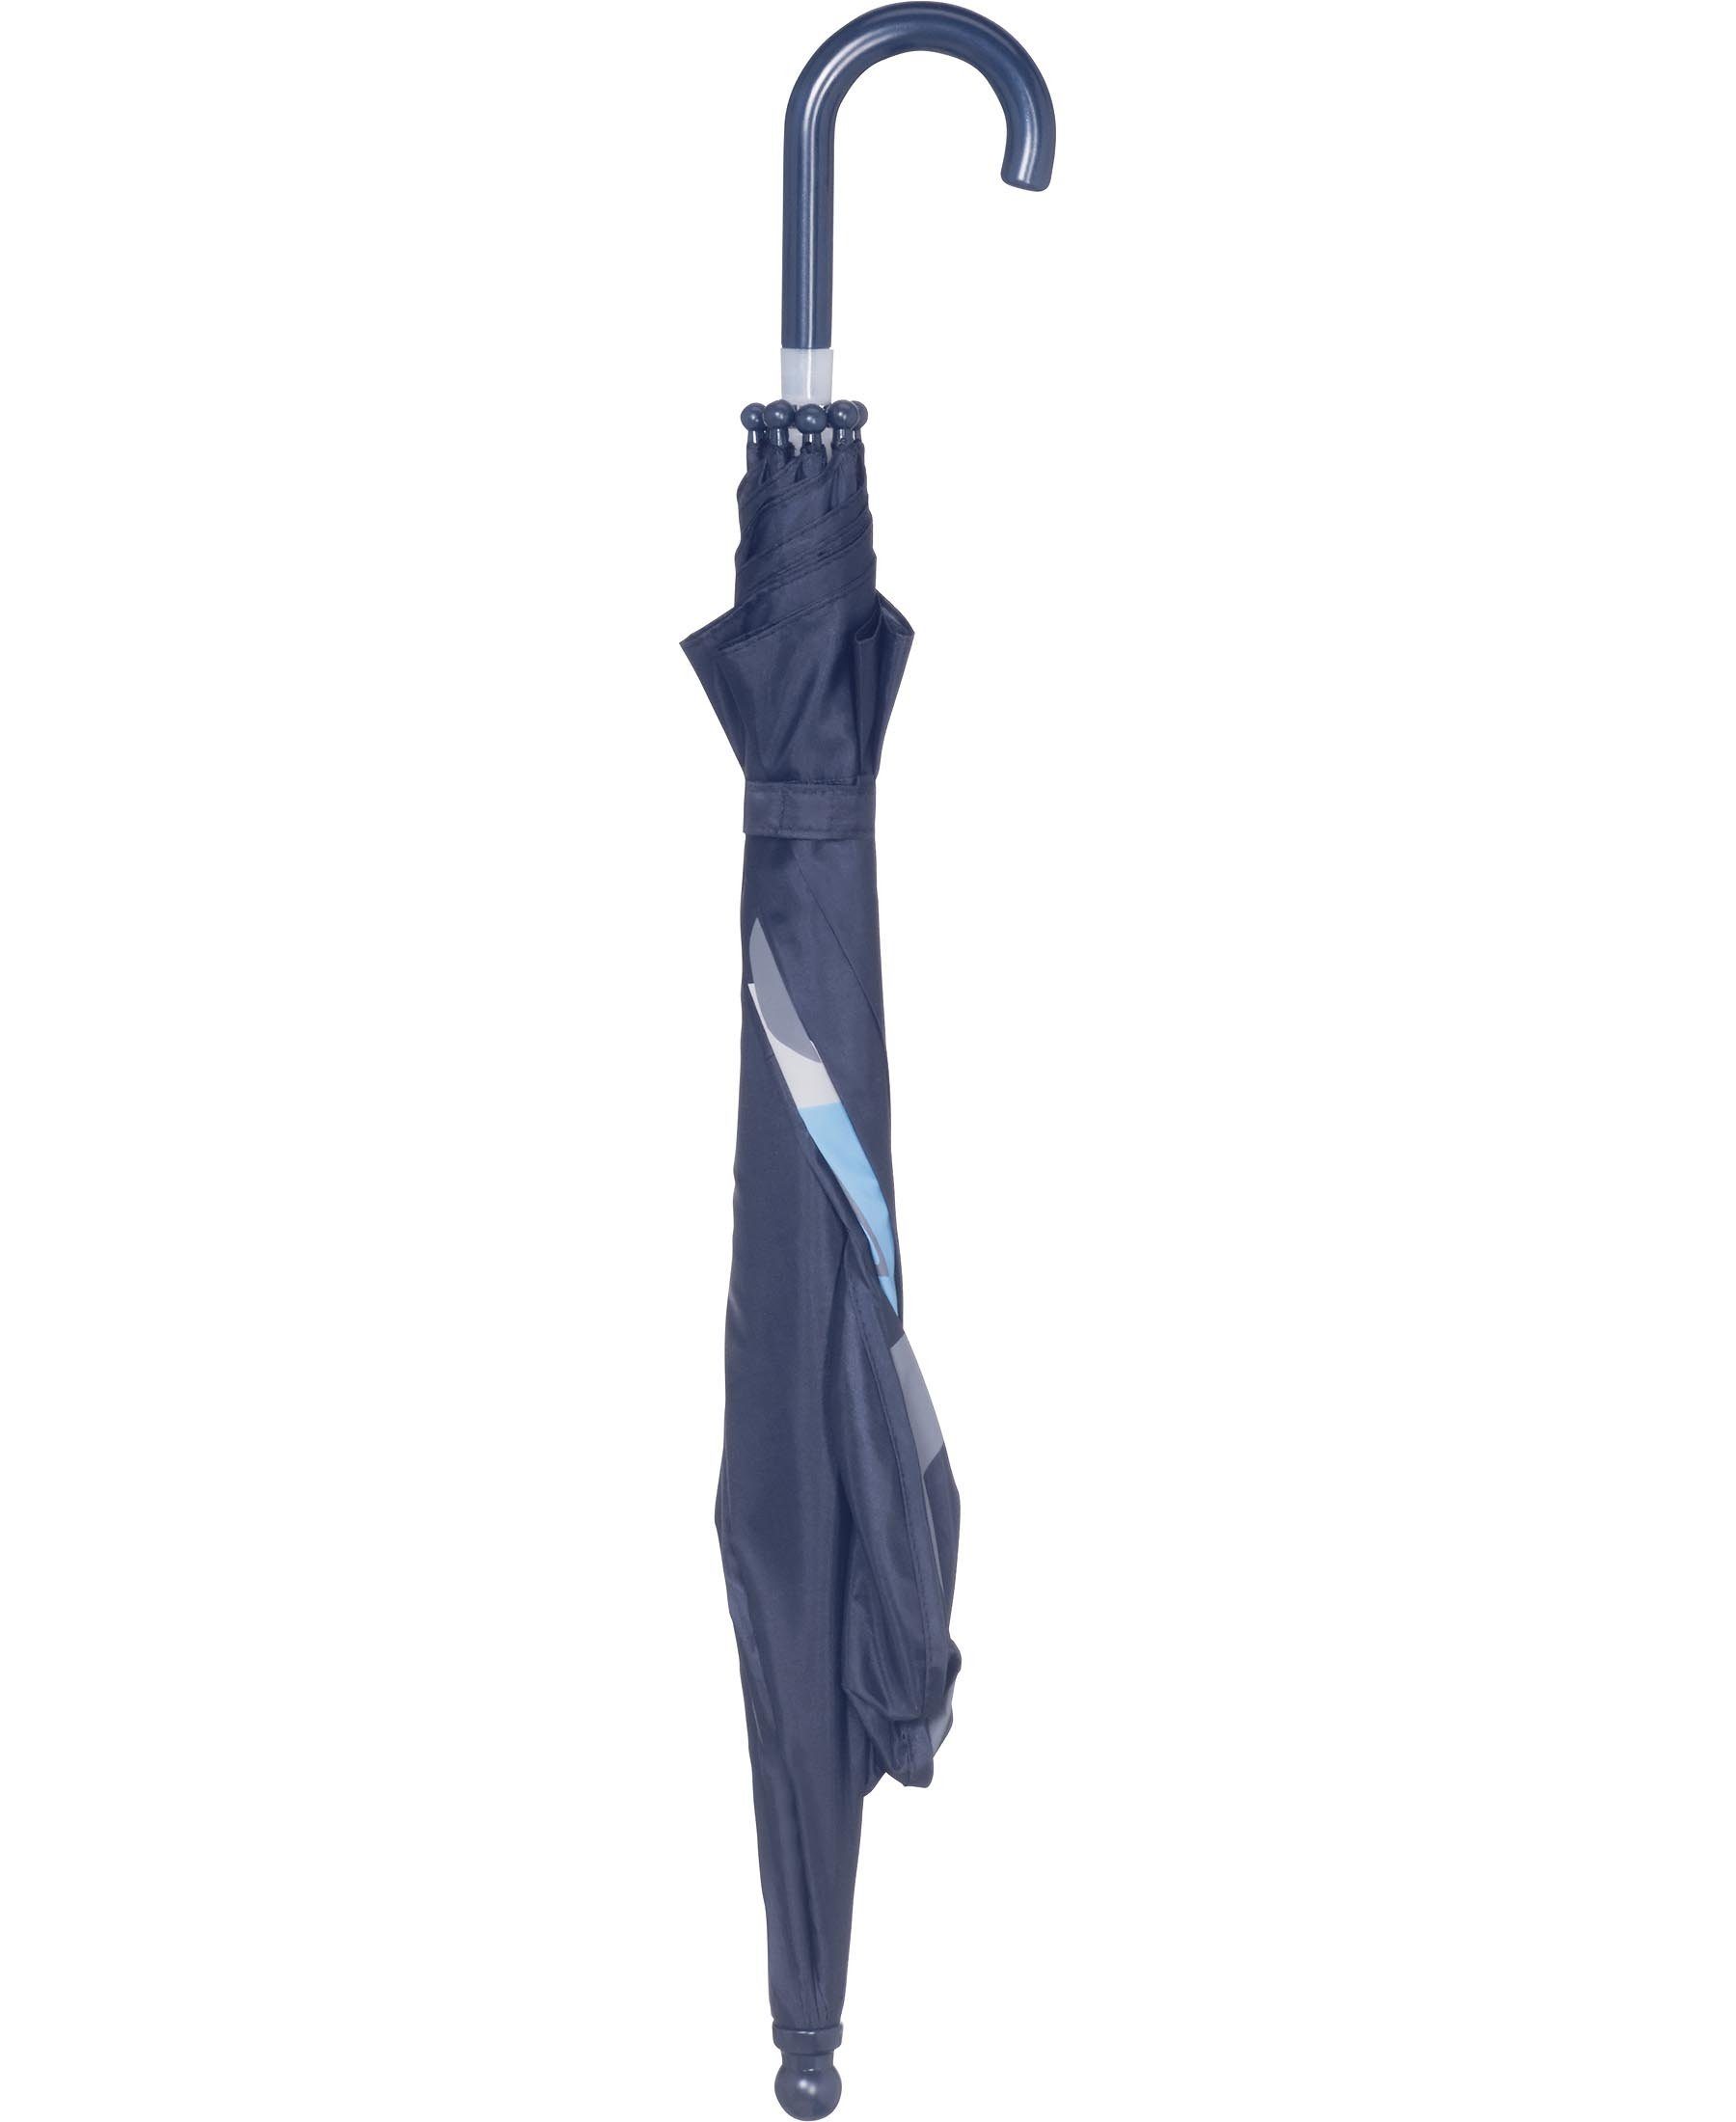 Baustelle 3D Playshoes Stockregenschirm Regenschirm